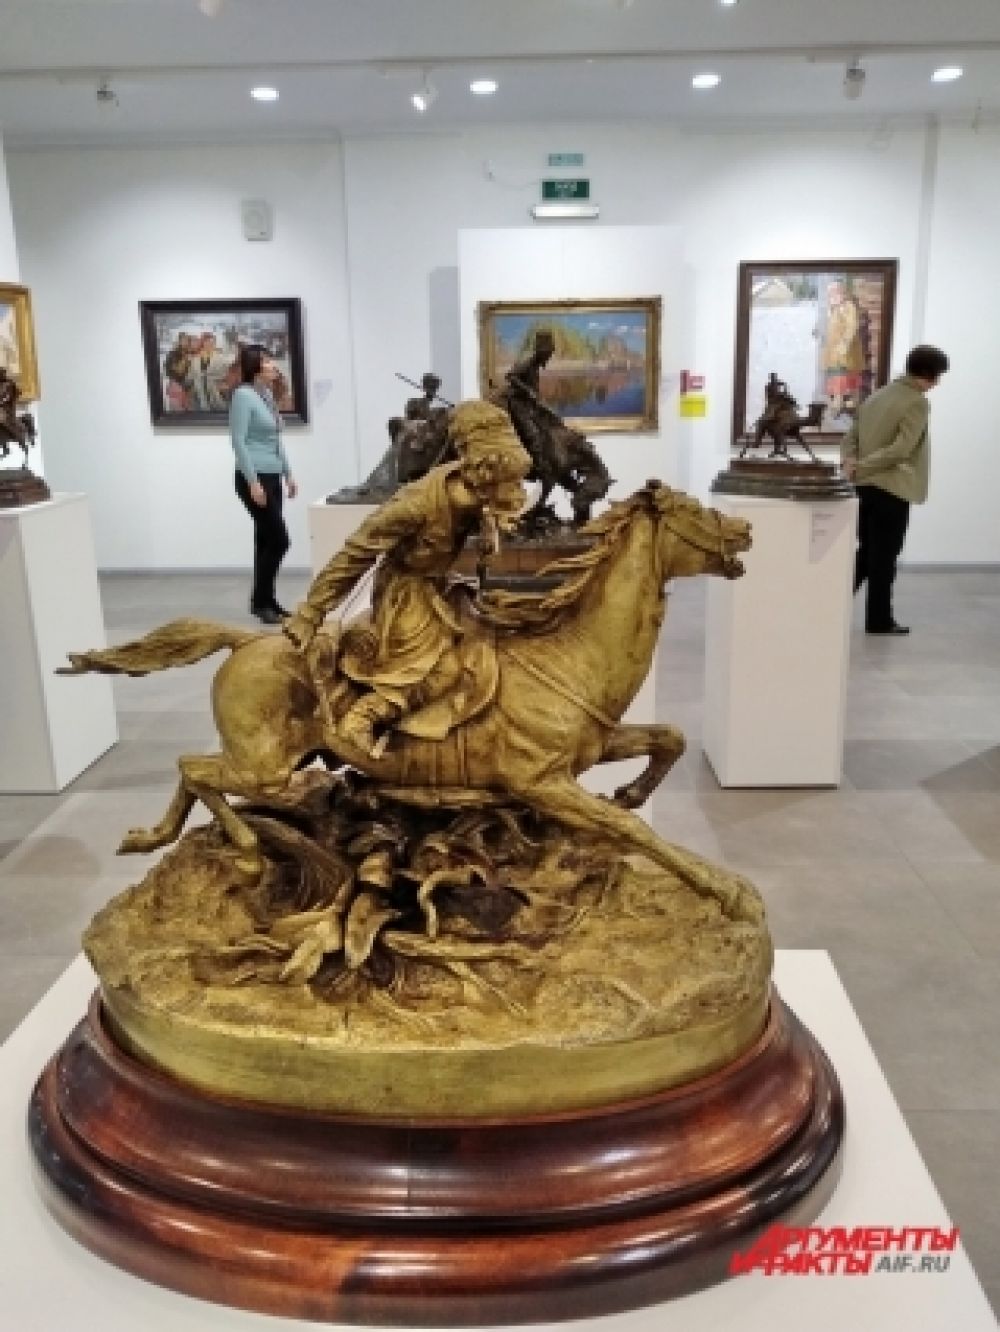 Гости выставки могут увидеть уникальные работы мастеров XIX – начала ХХ веков в оригинале. 